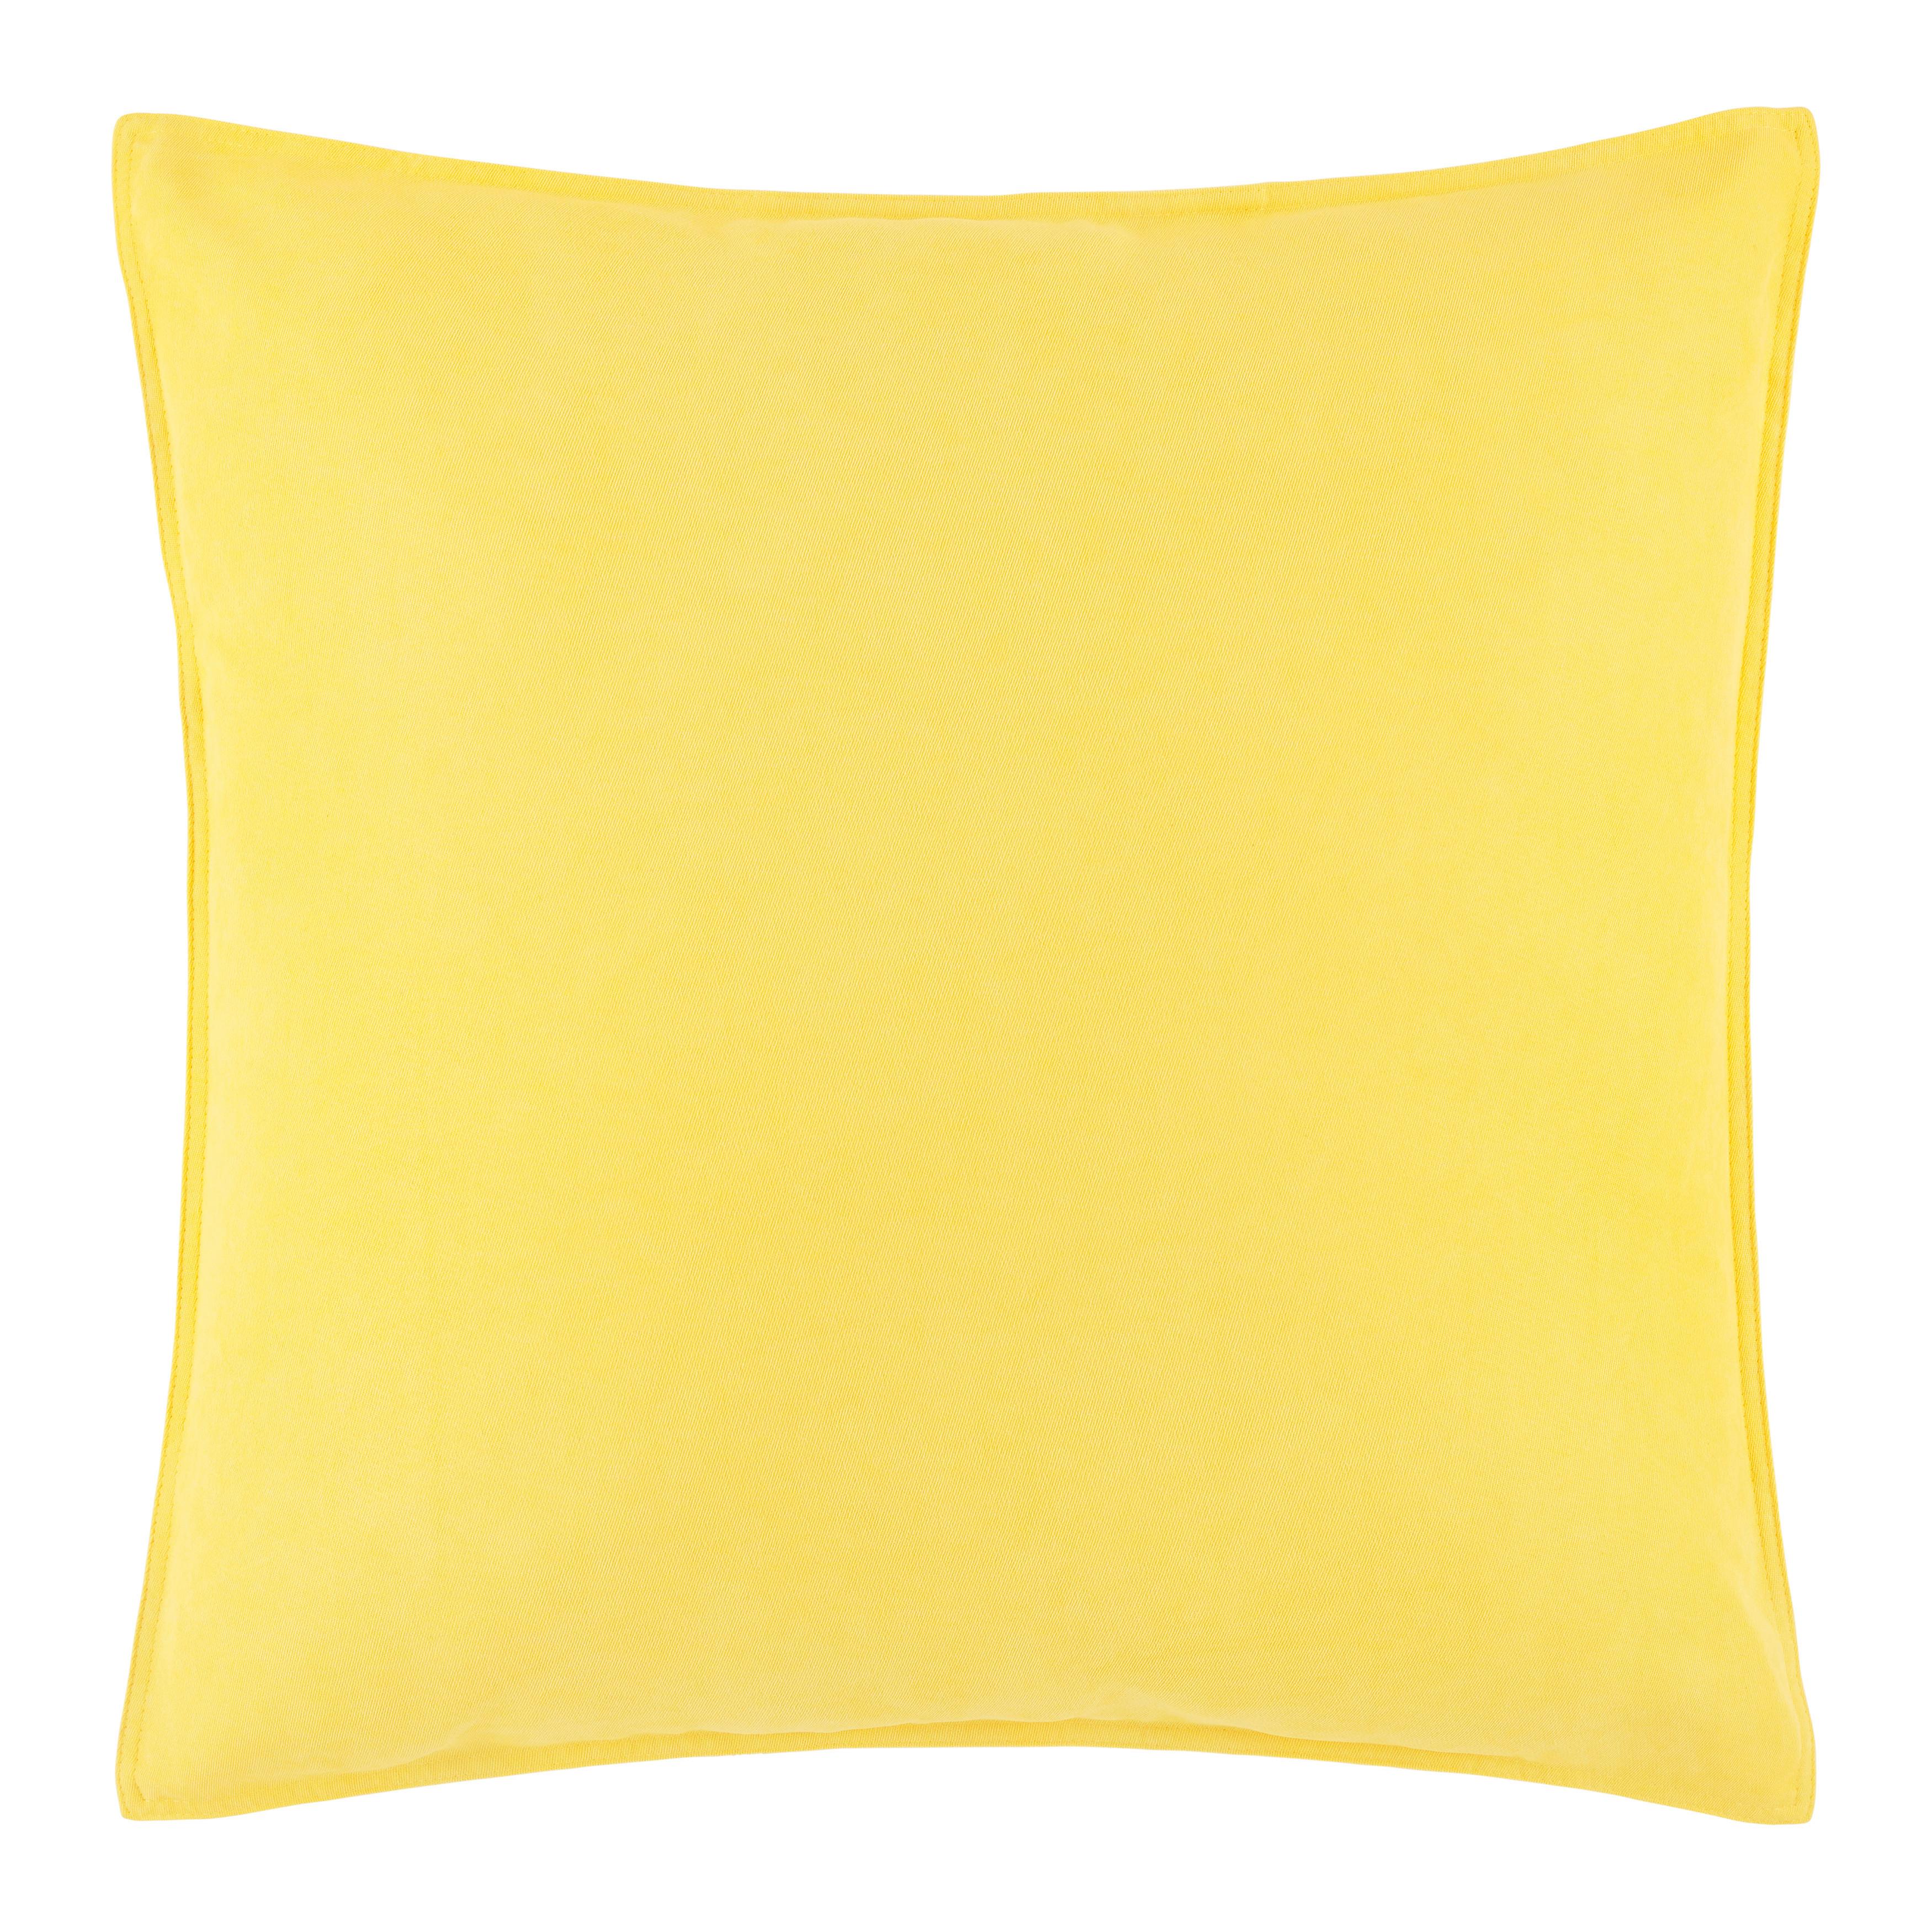 Dekorační Polštář Nathi, 60/60cm, Žlutá - žlutá, Konvenční, textil (60/60cm) - Modern Living